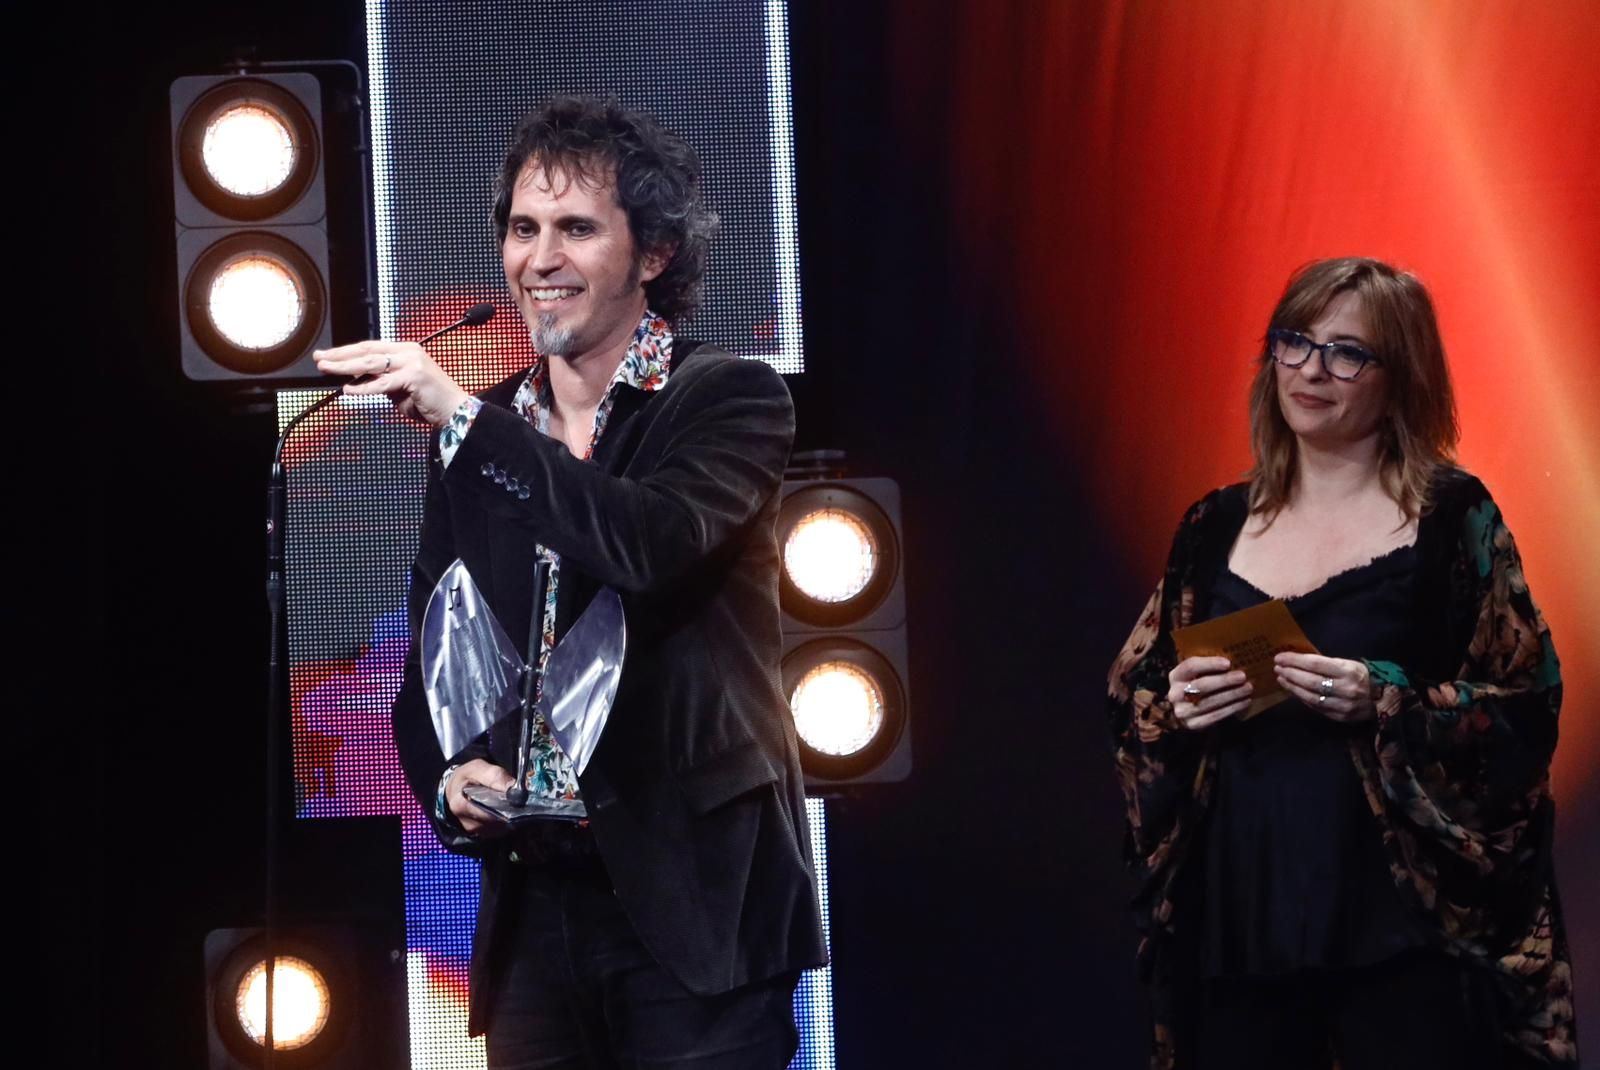 Los premios de la música aragonesa, en imágenes